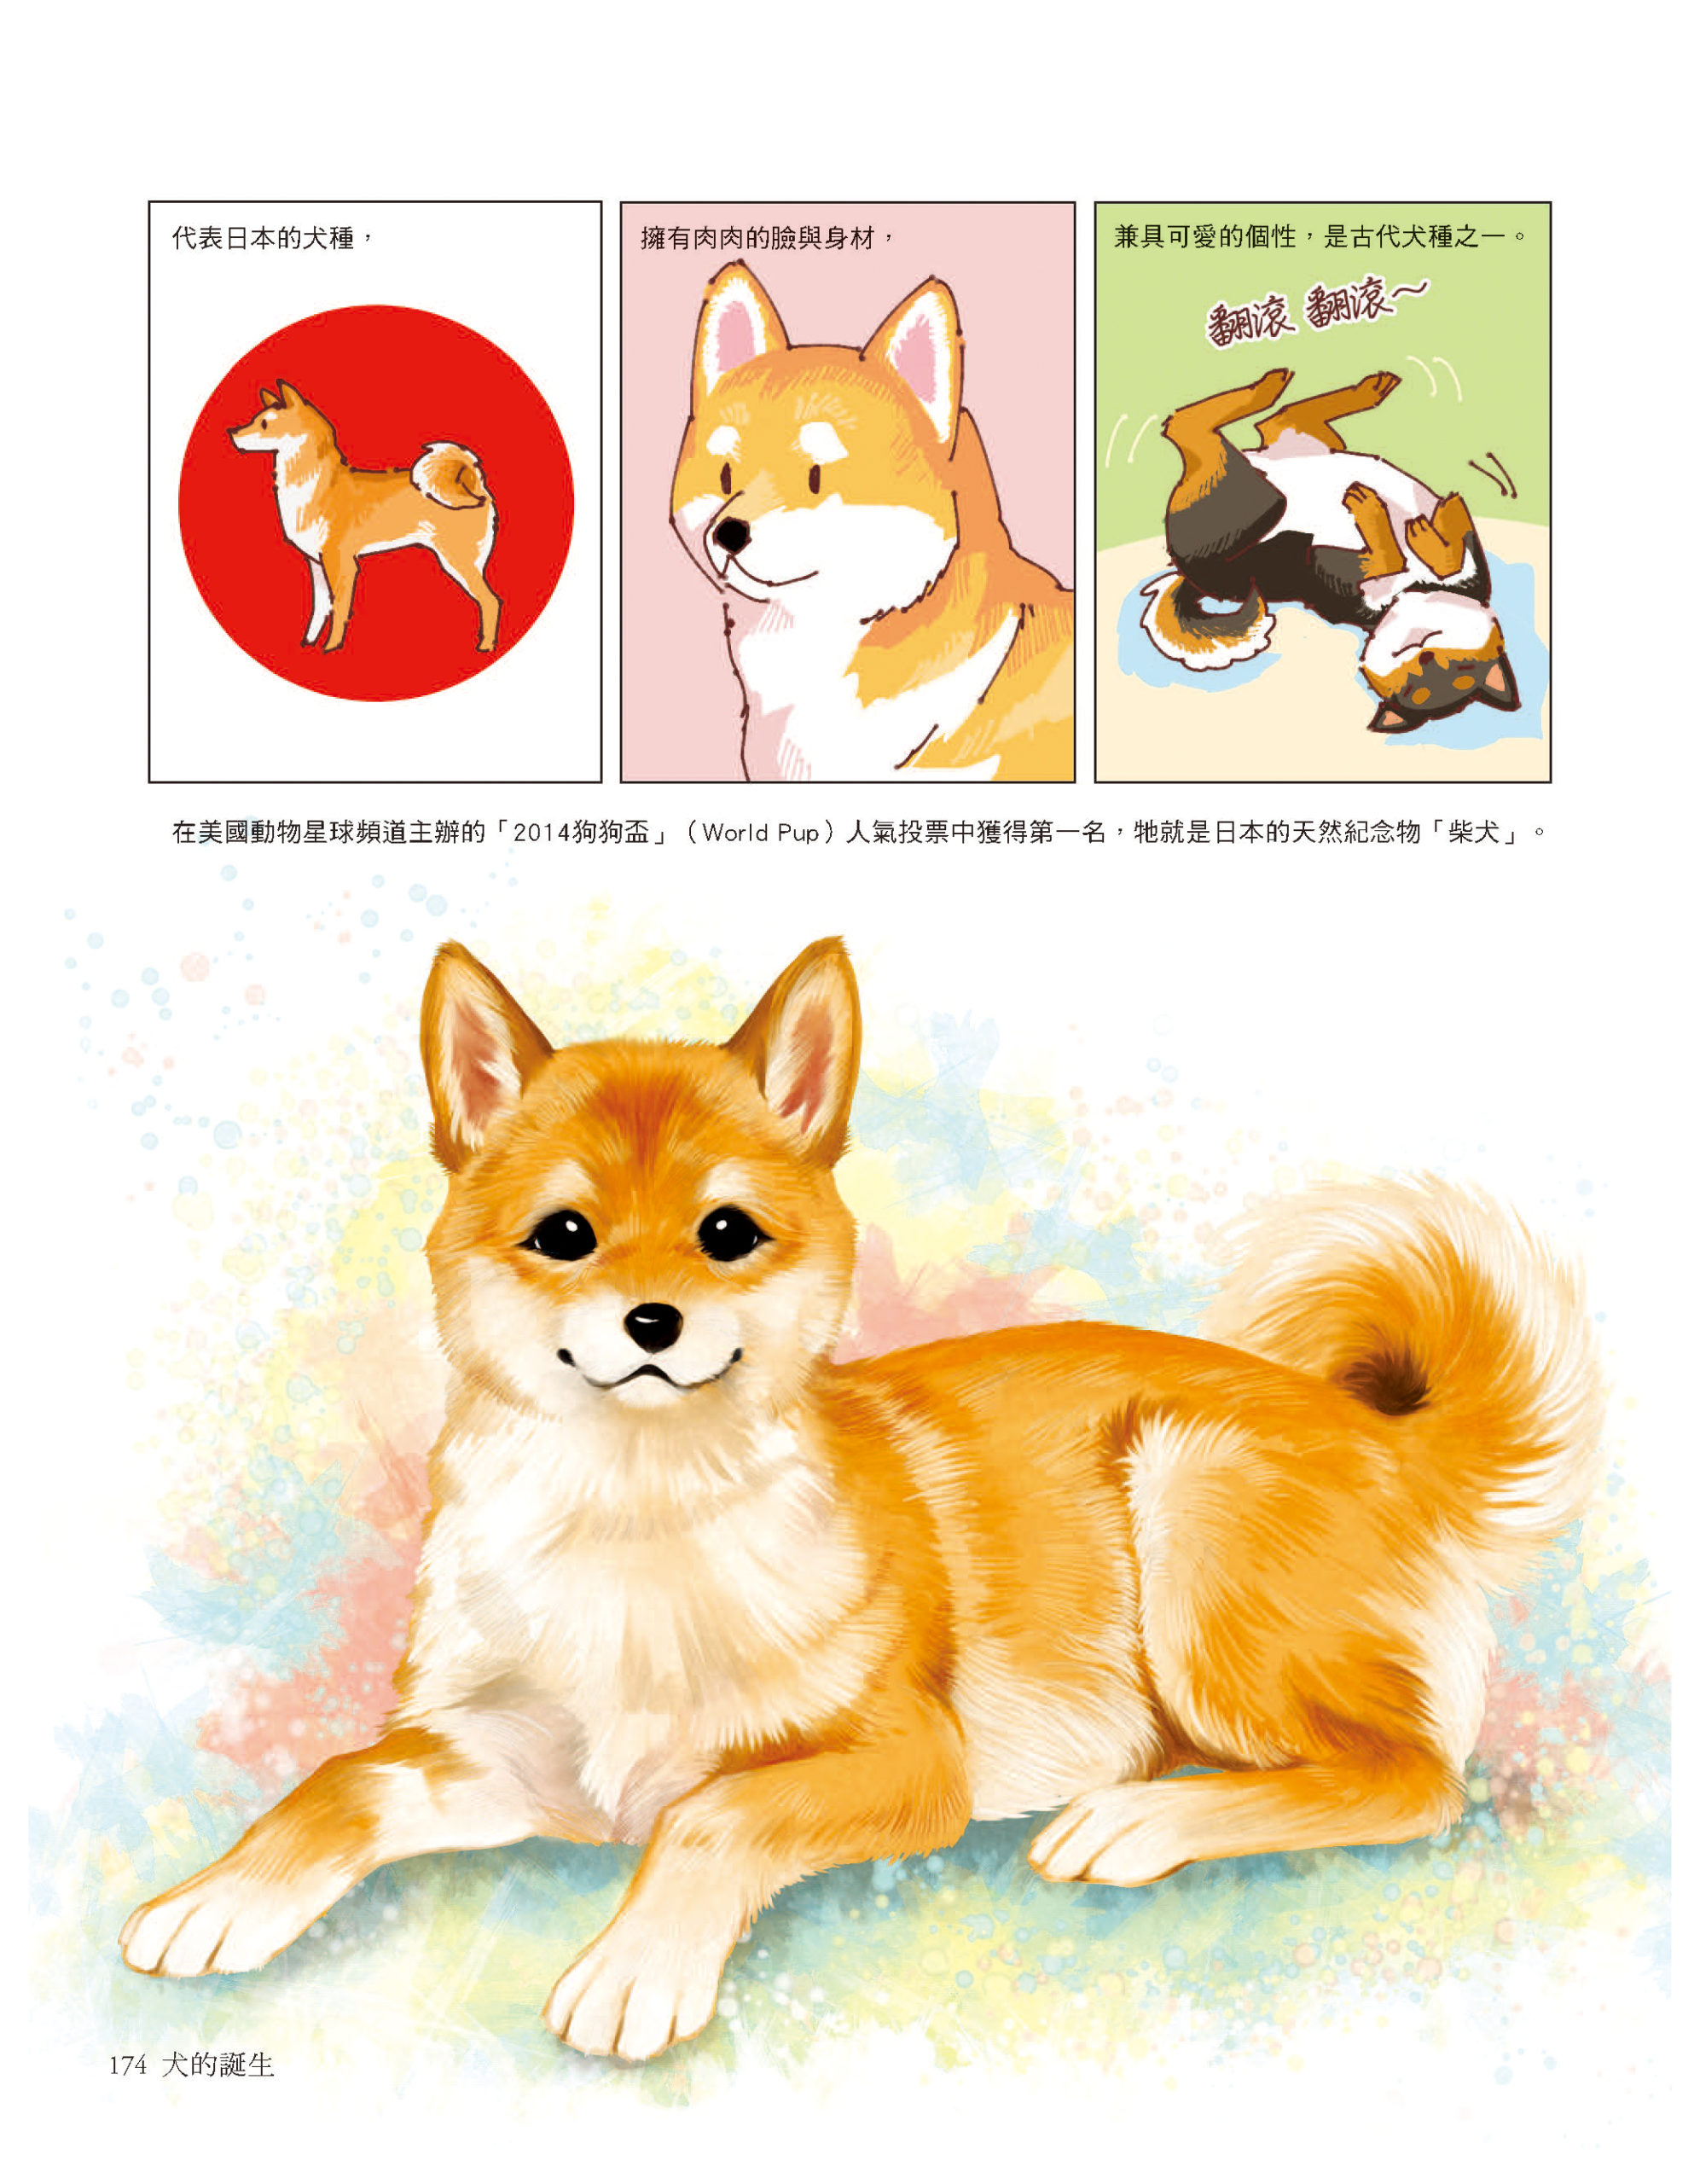 柴犬是日本的天然紀念物　《犬的誕生》一覽柴柴的身世之謎